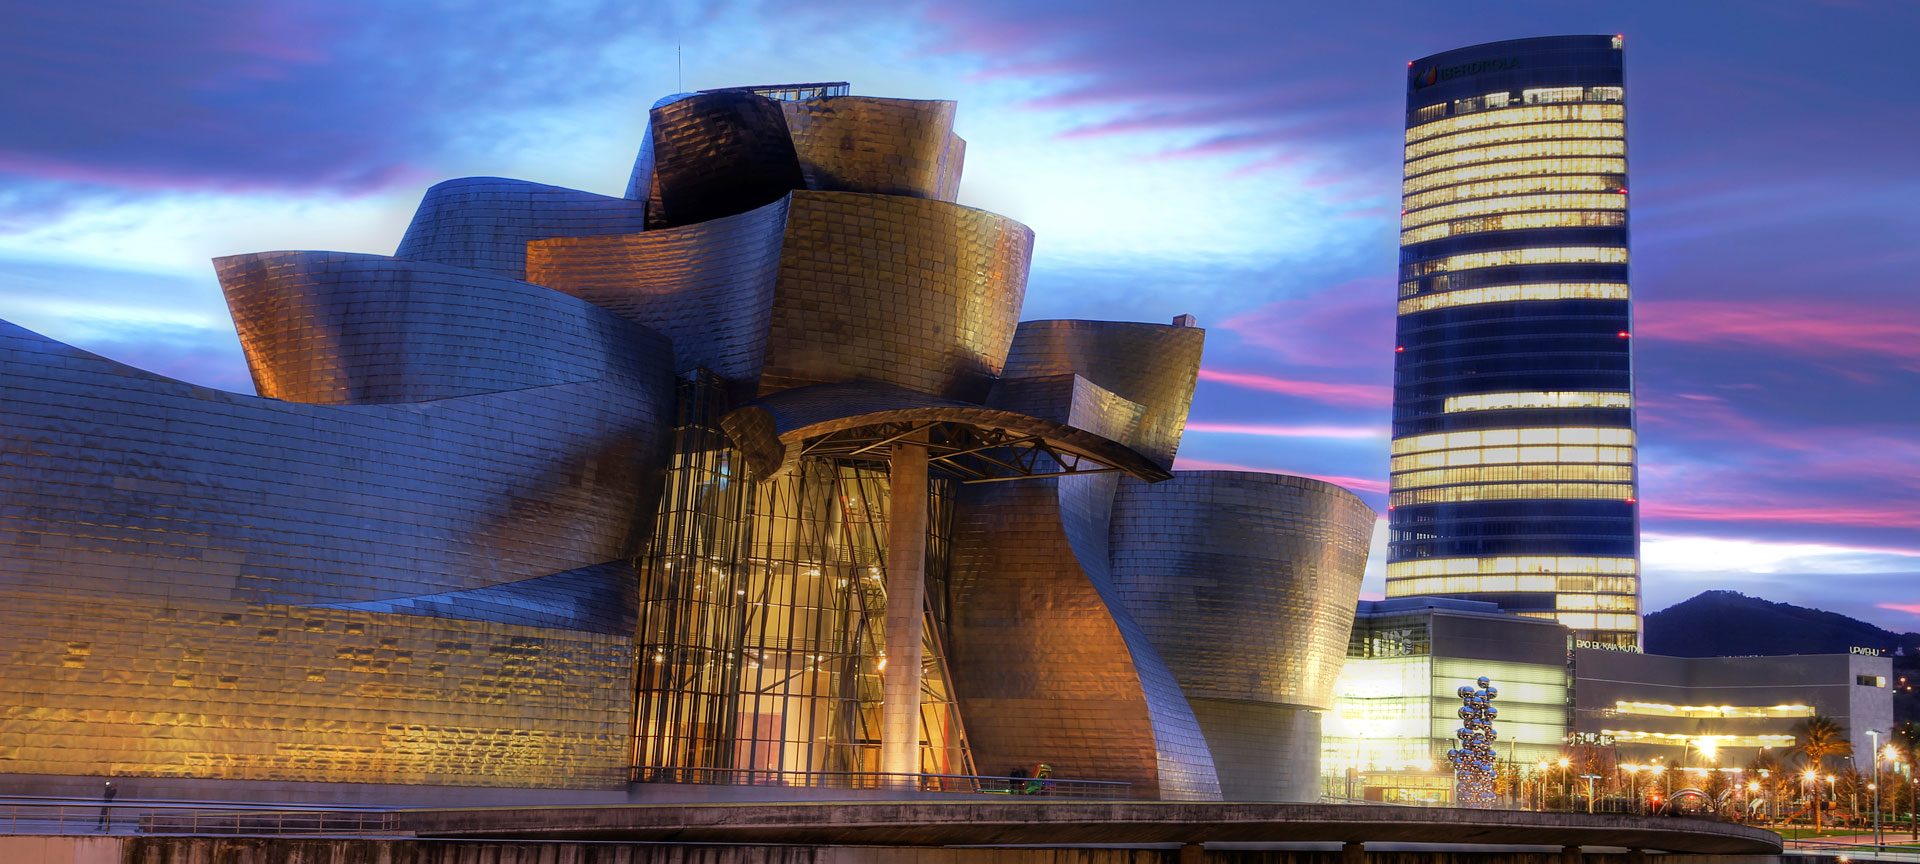 Guggenheim Museum Bilbao (the Basque Country)